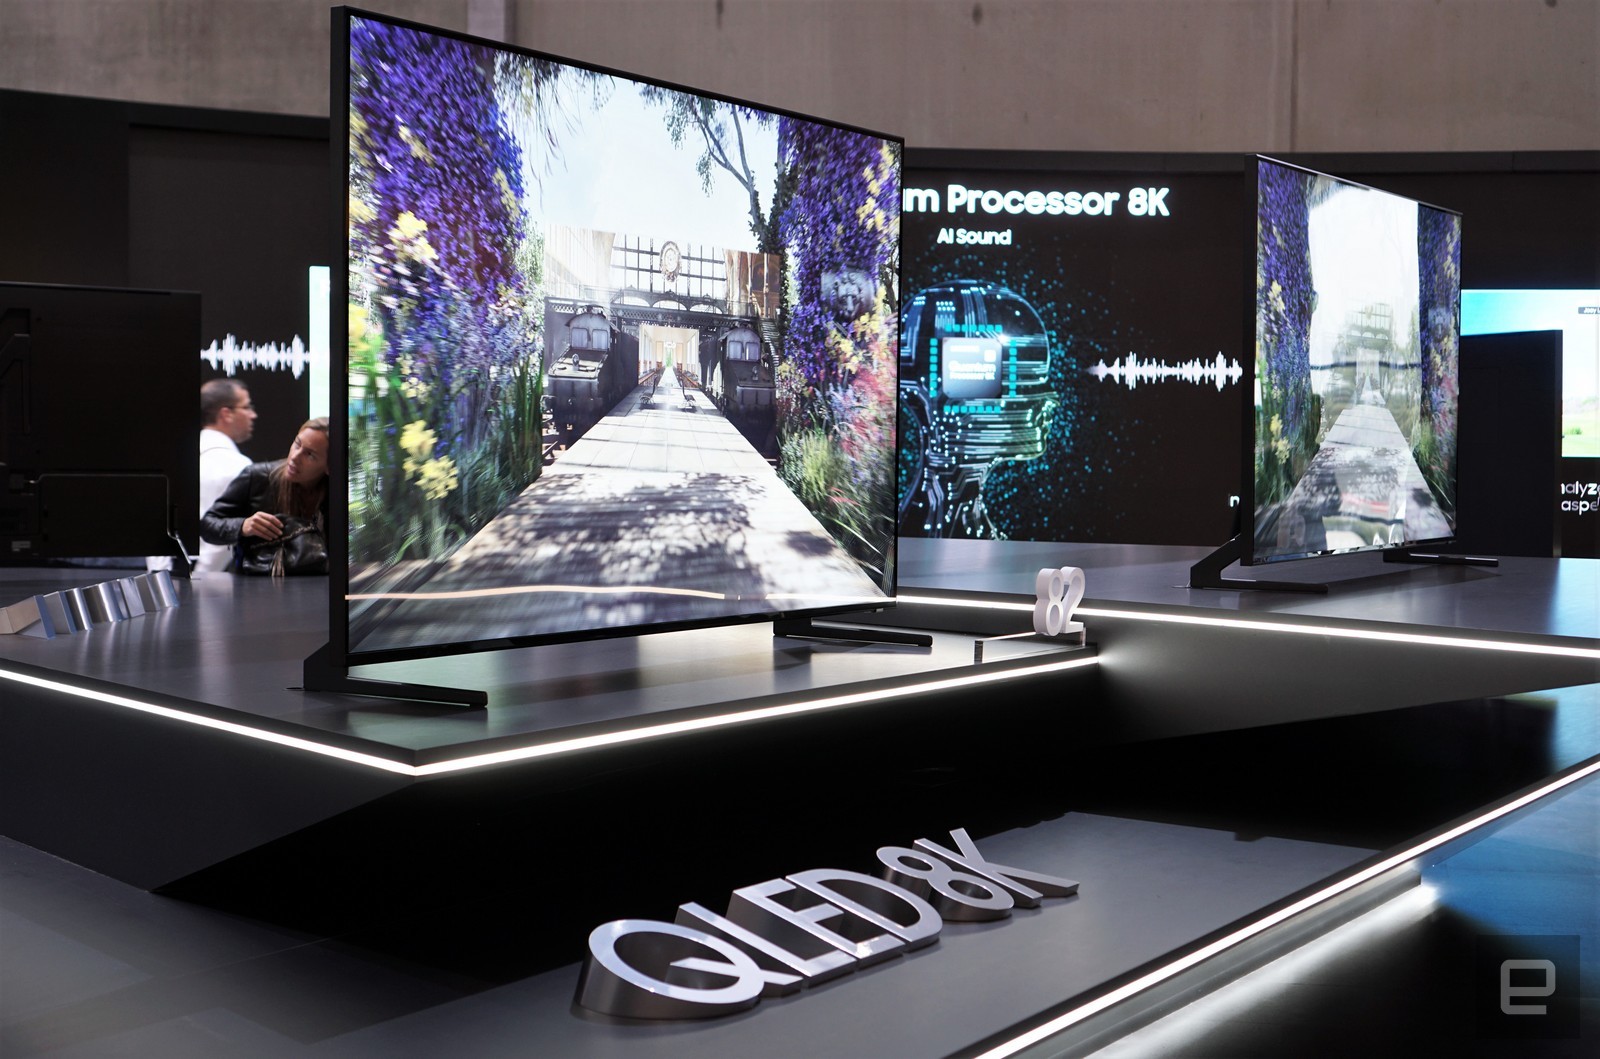 Samsung công bố TV QLED 8K đầu tiên